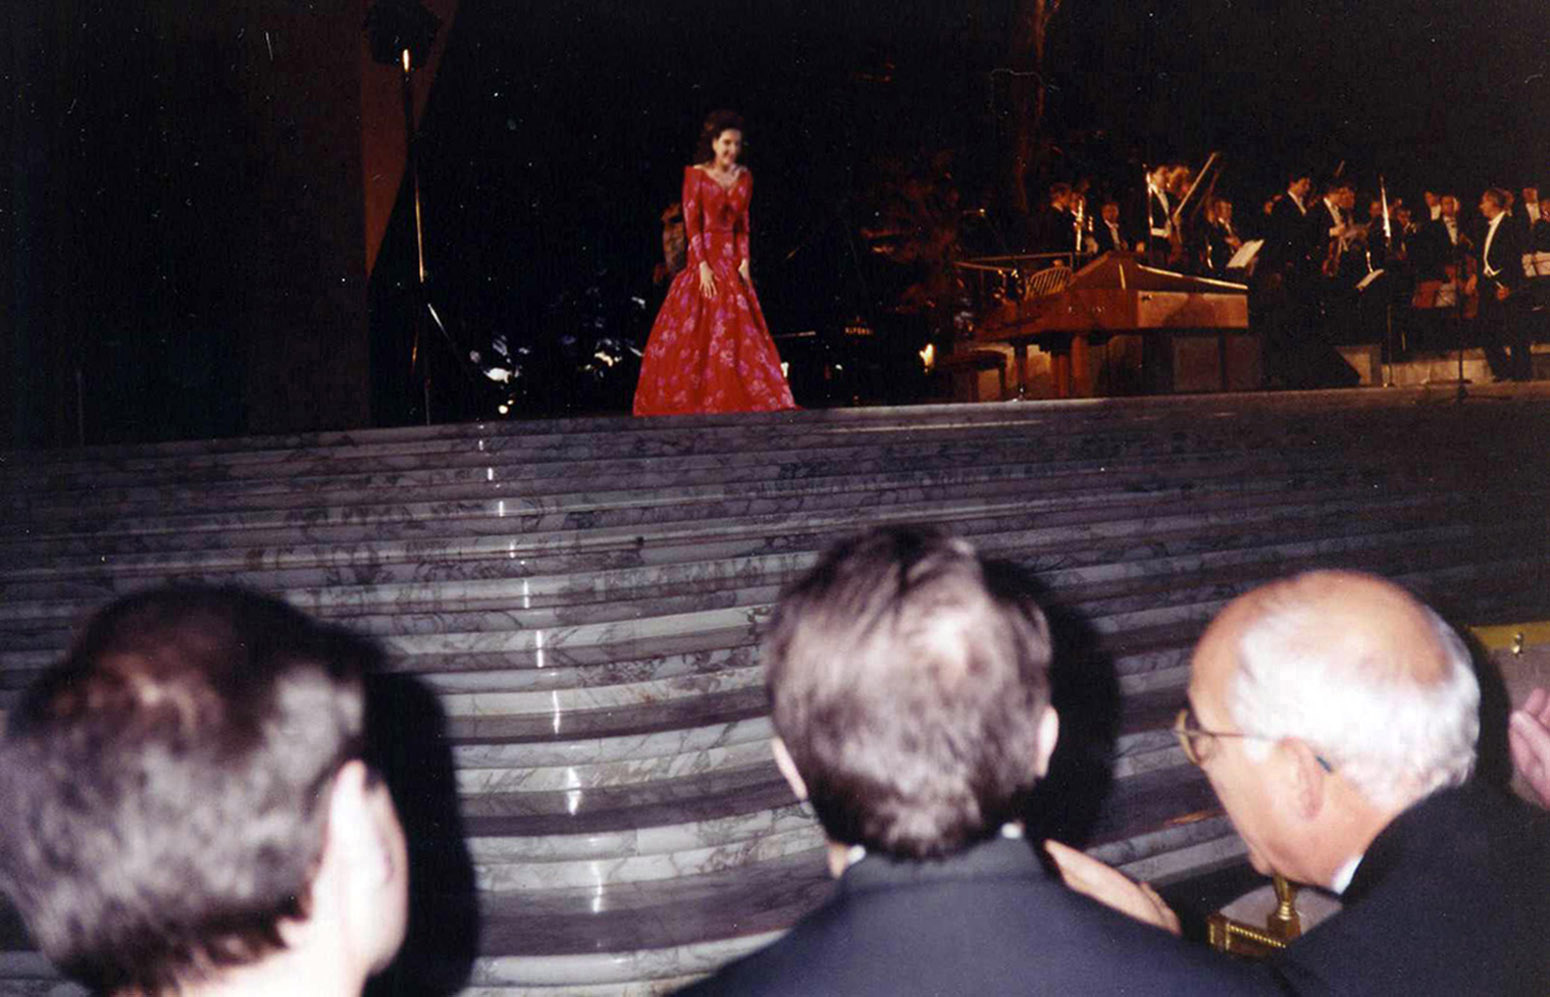 Lucia Aliberti⚘Sala Nervi⚘Vatican⚘Rome⚘Solisti Veneti Orchestra⚘Claudio Scimone conductor⚘Special Gala Concert"⚘Unitalsi⚘On Stage⚘Hanae Mori Fashion⚘:http://www.luciaaliberti.it #luciaaliberti #chaudioscimone #solistivenetiorchestra #salanervi #vatican #rome #concert #unitalsi #onstage #hanaemorifashion